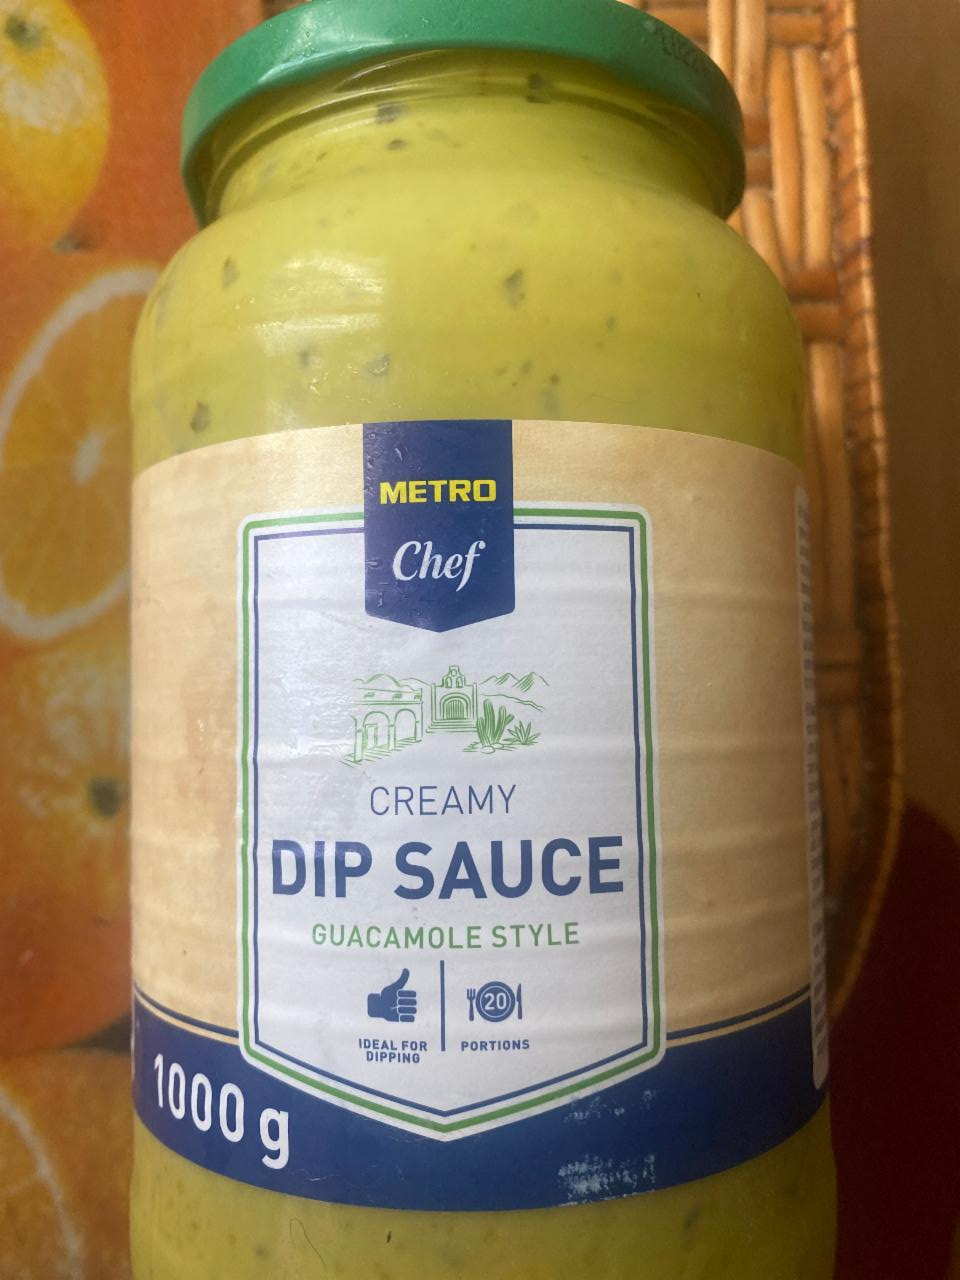 Фото - Соус из авокадо Creamy Dip Sauce Metro Chef